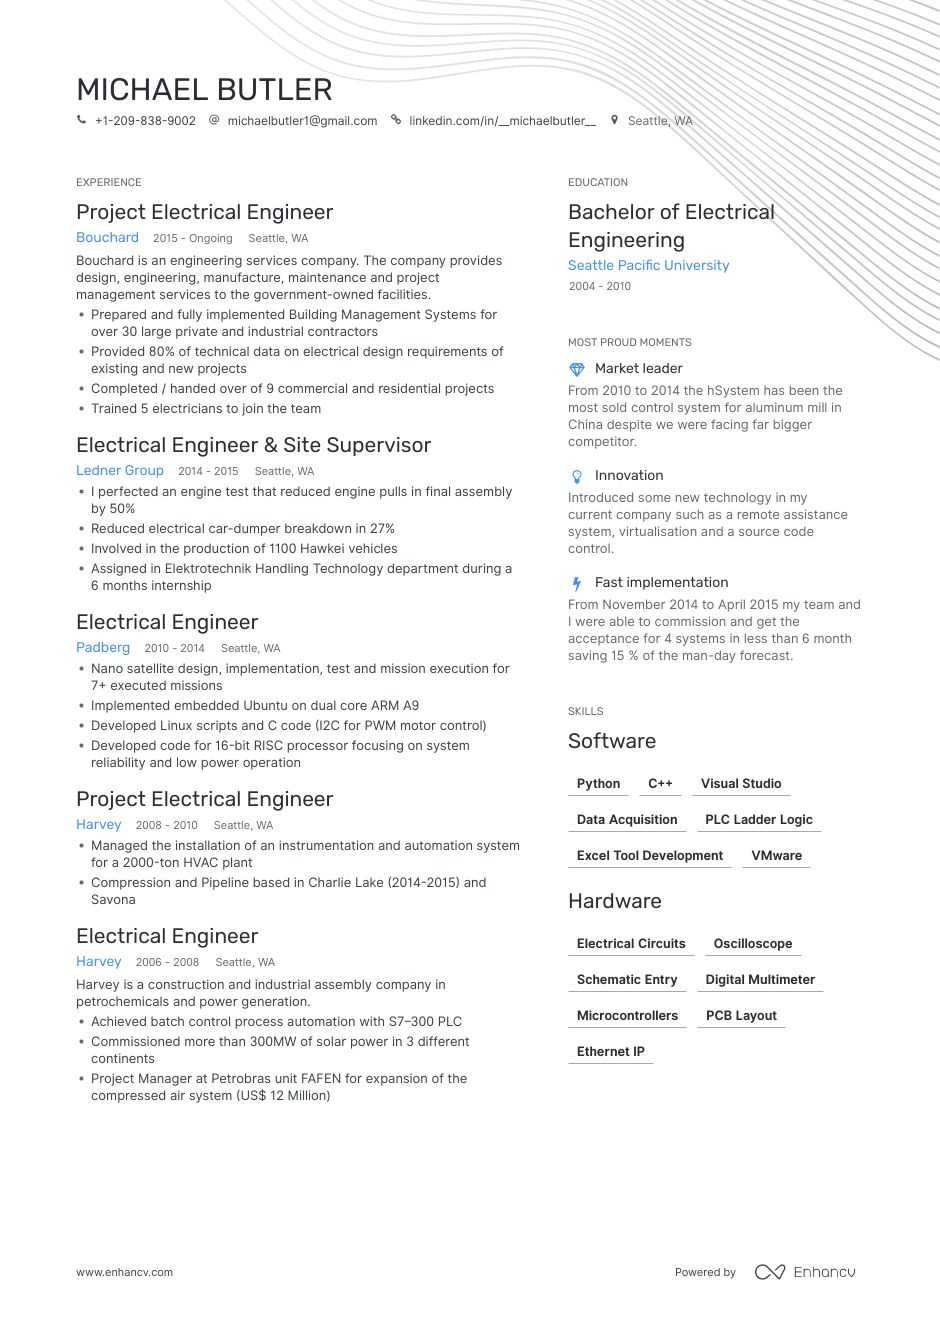 Phd electrical engineering resume